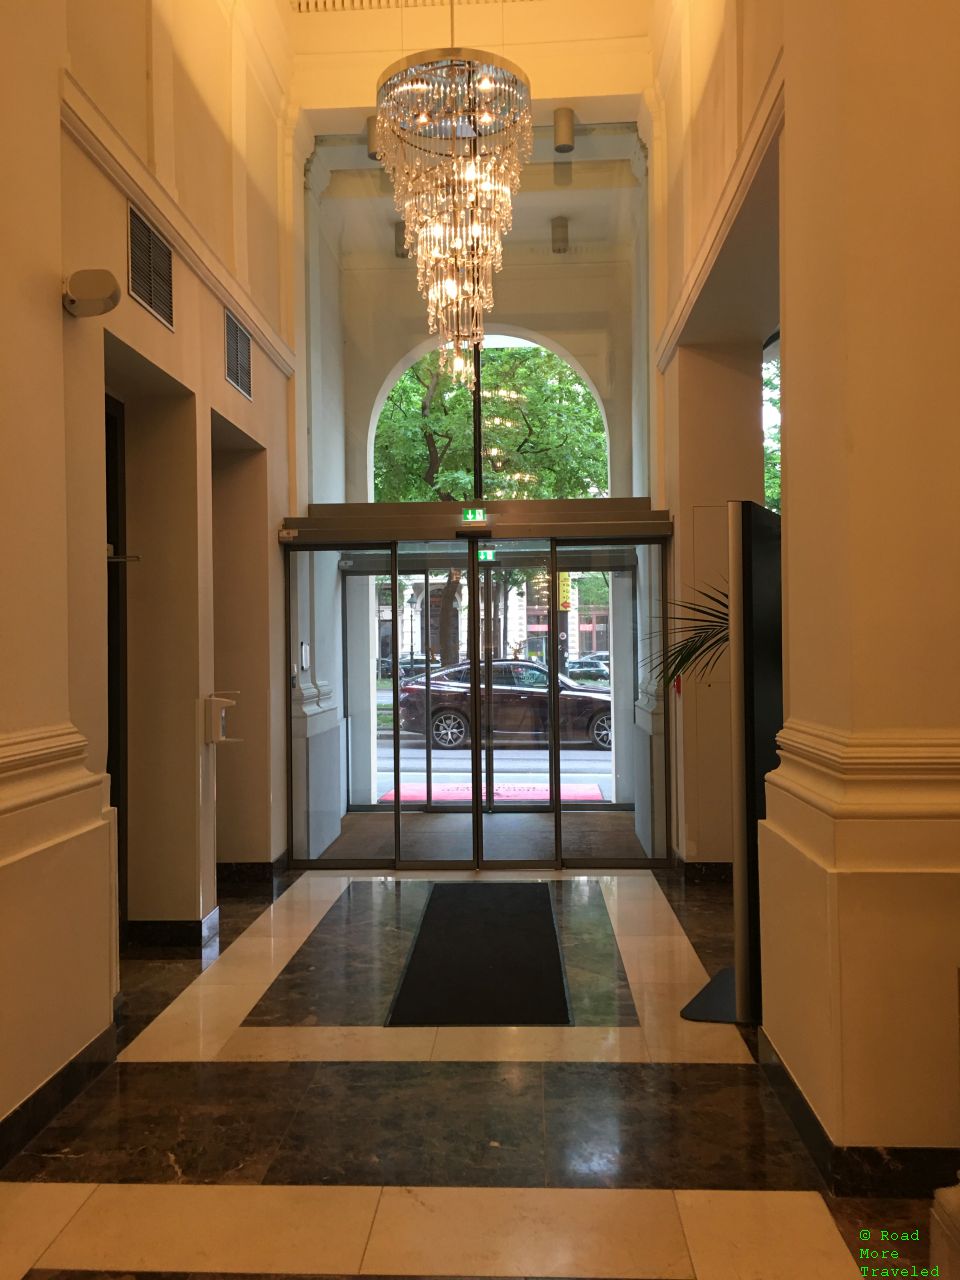 Palais Hansen Kempinski Vienna - lobby